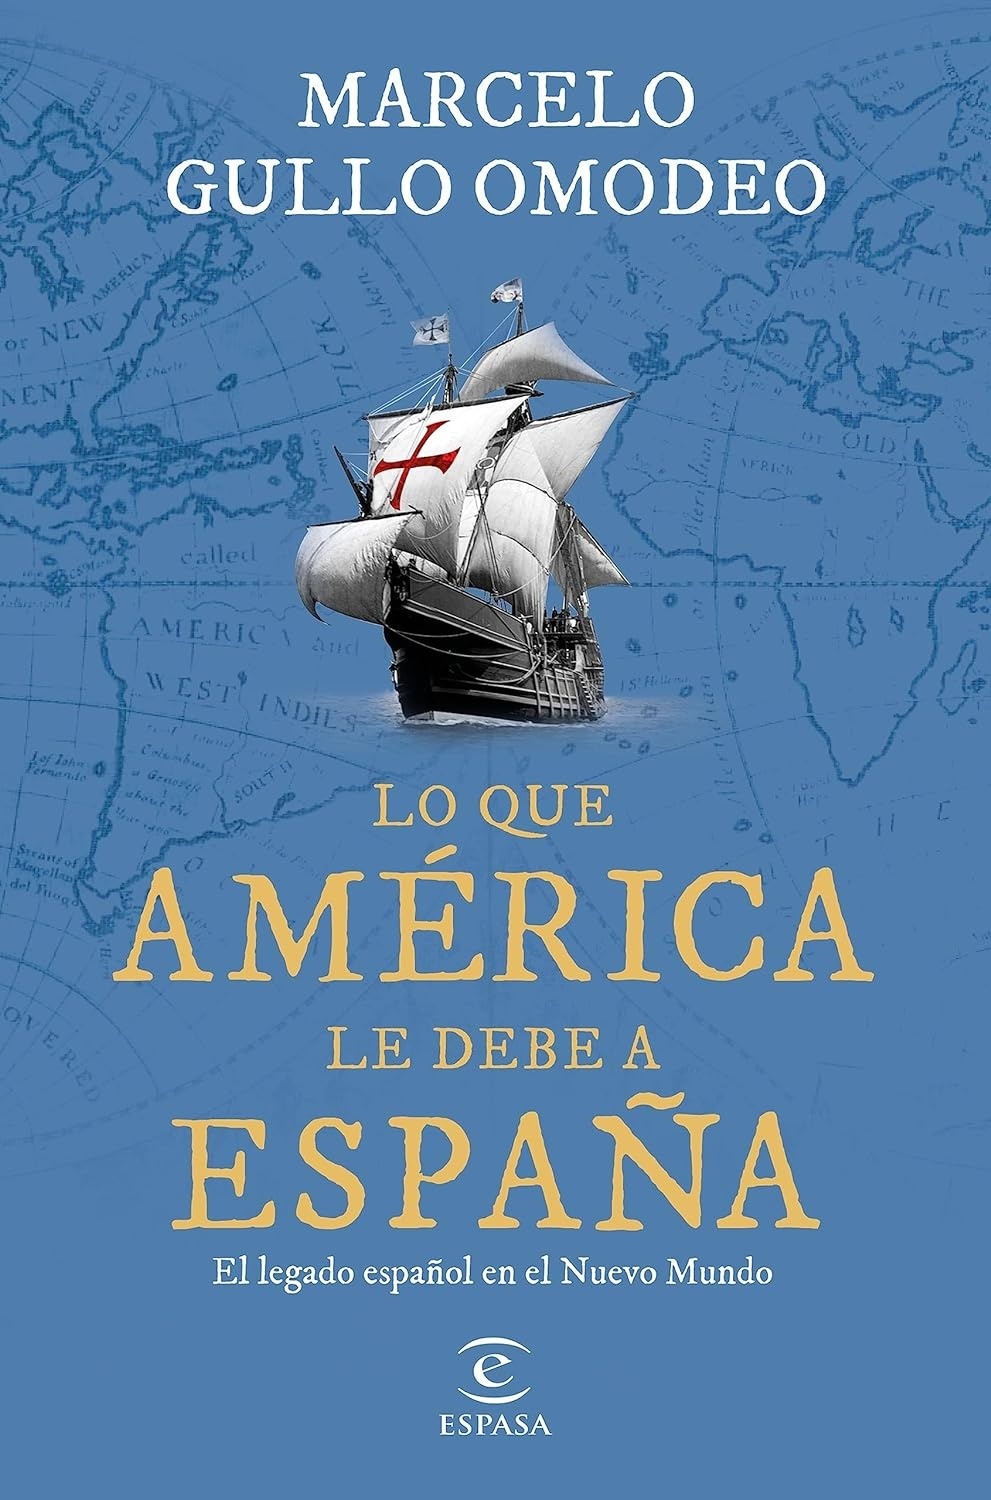 Lo que América le debe a España "El legado español en el Nuevo Mundo"